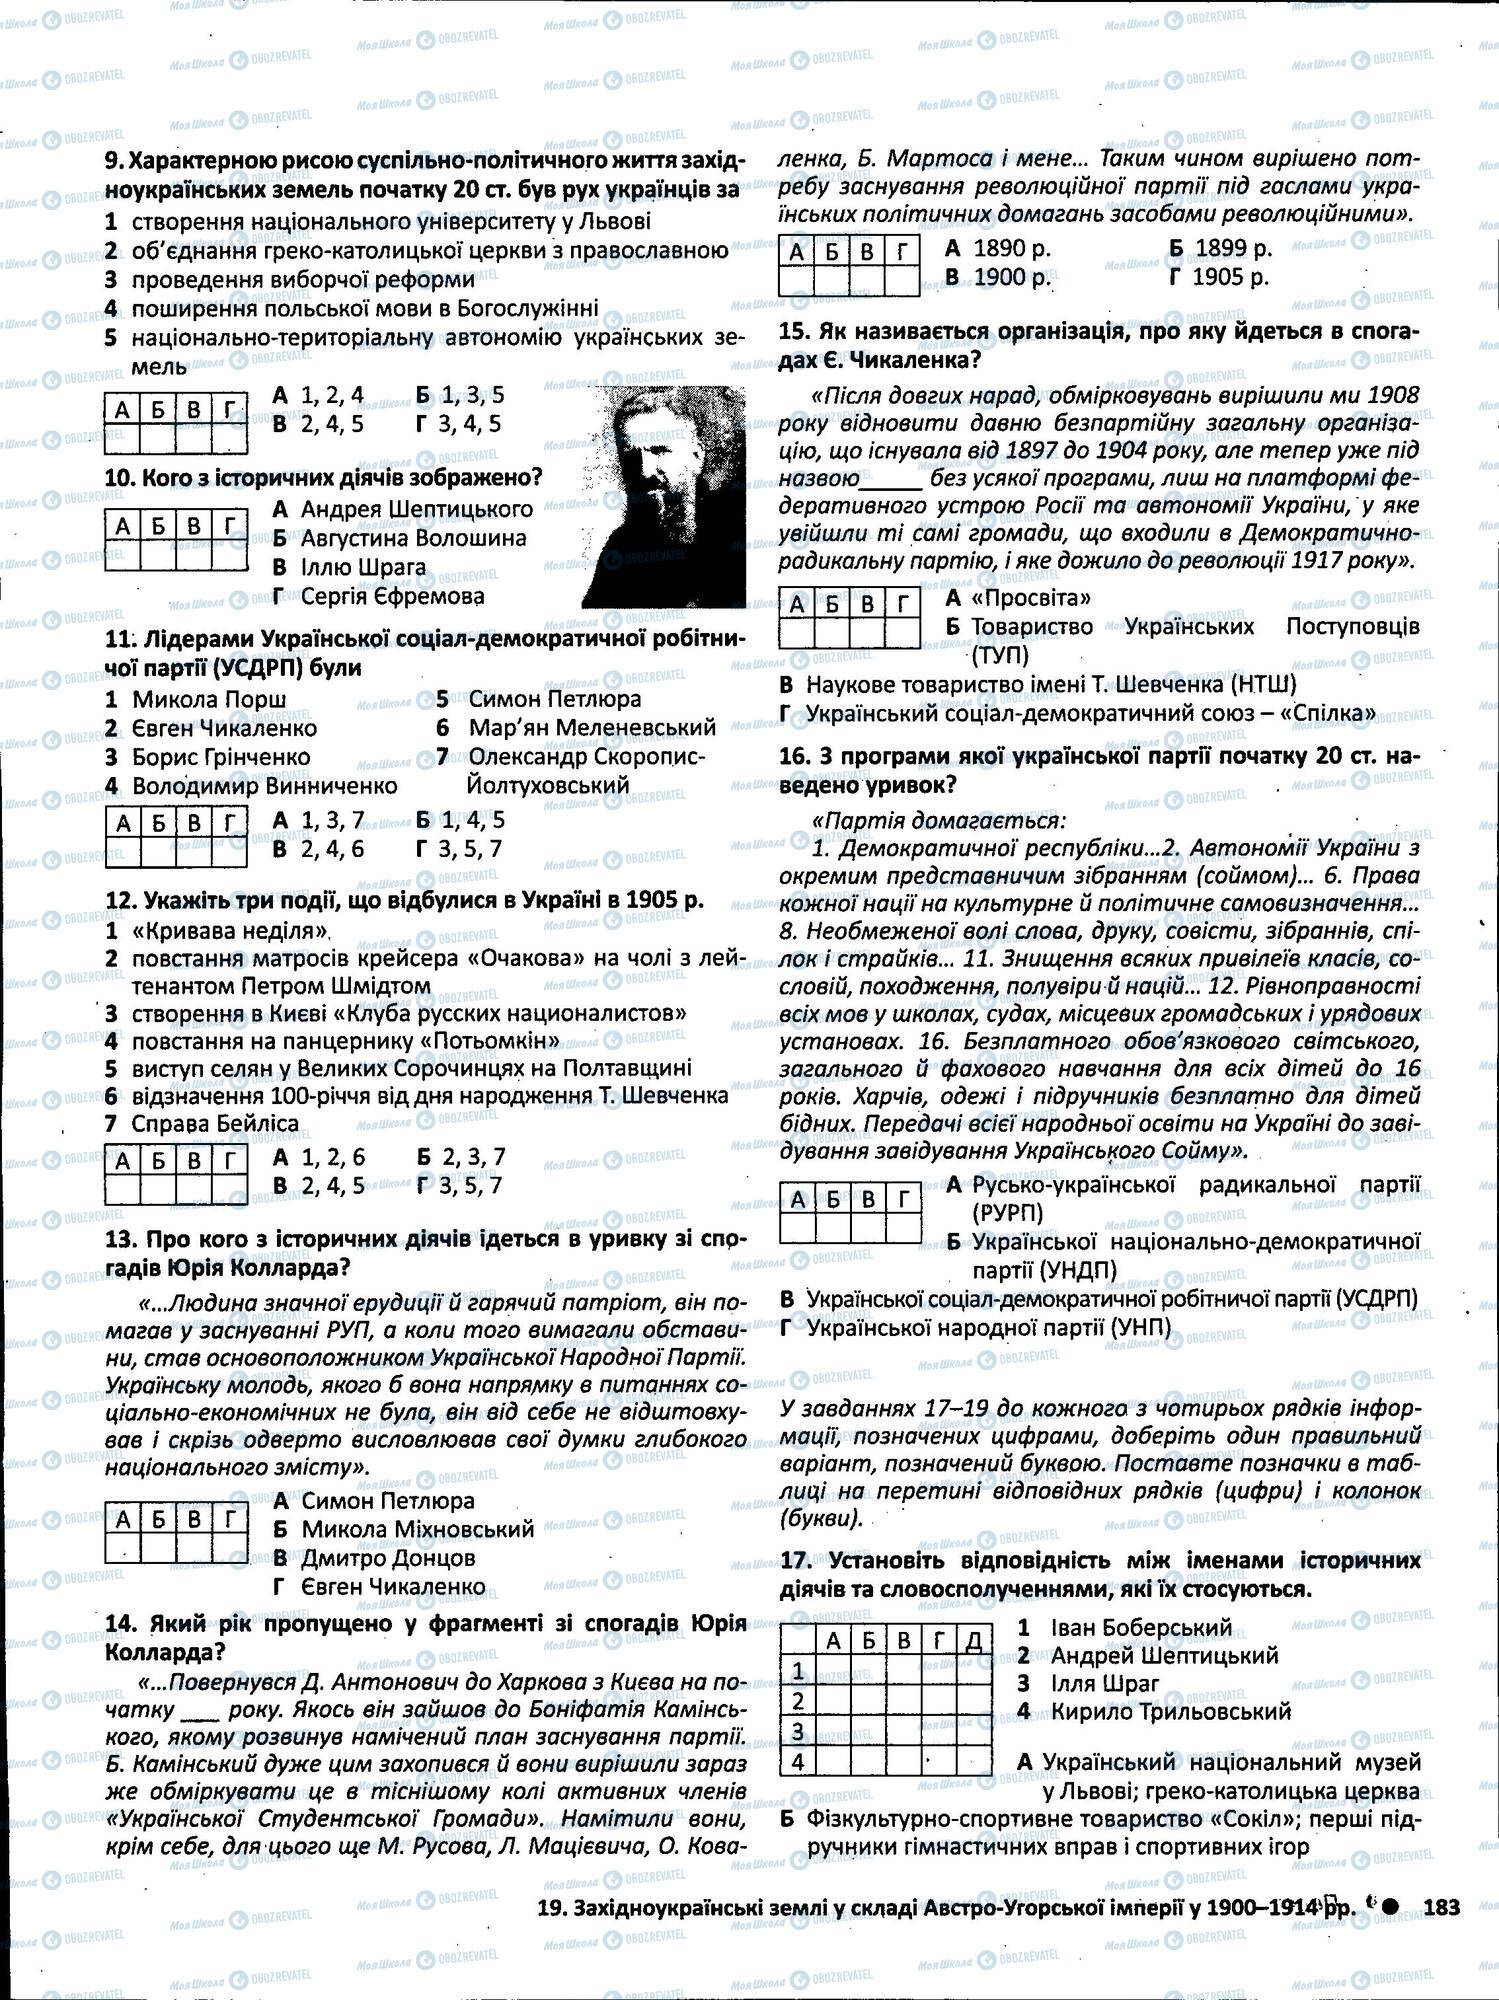 ЗНО История Украины 11 класс страница 183